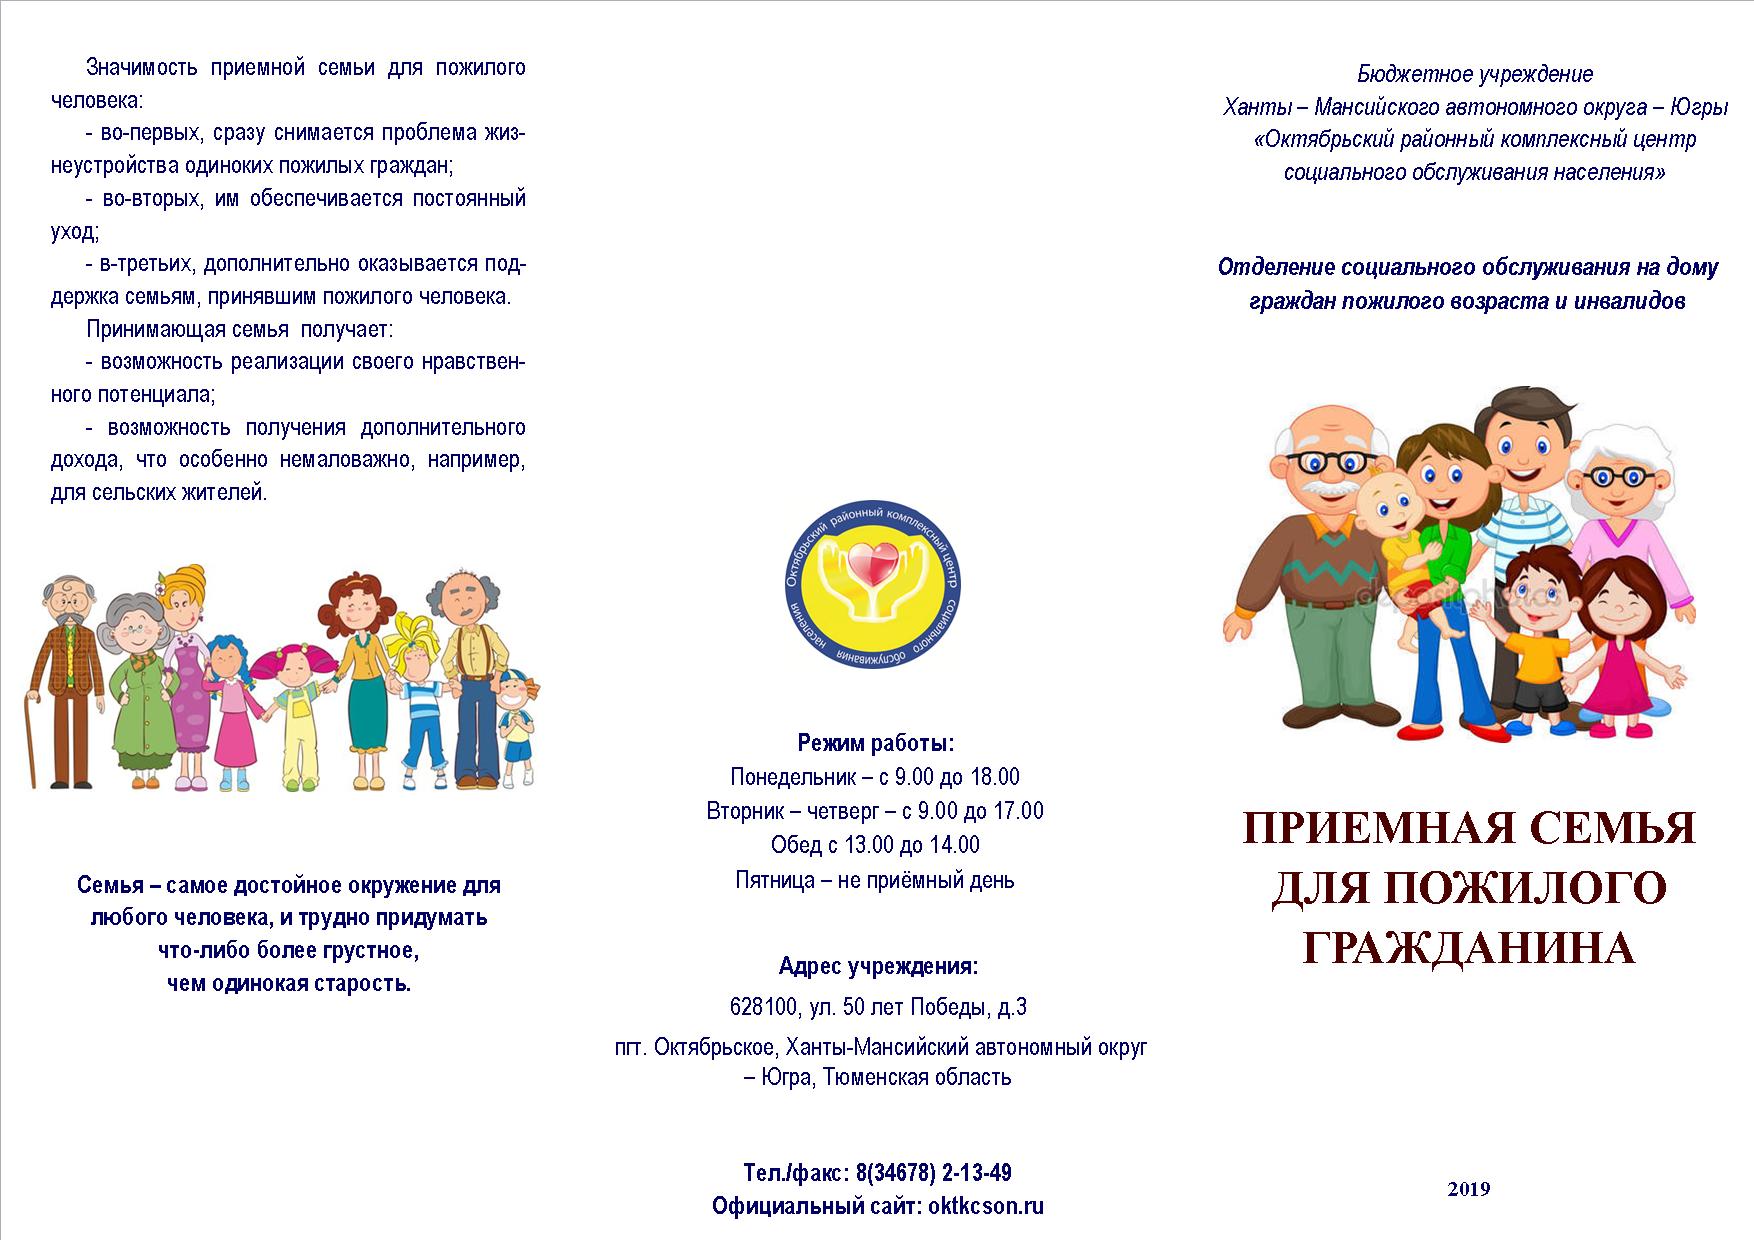 буклет Приемная семья для пожилого гражданина 2019112415.jpg